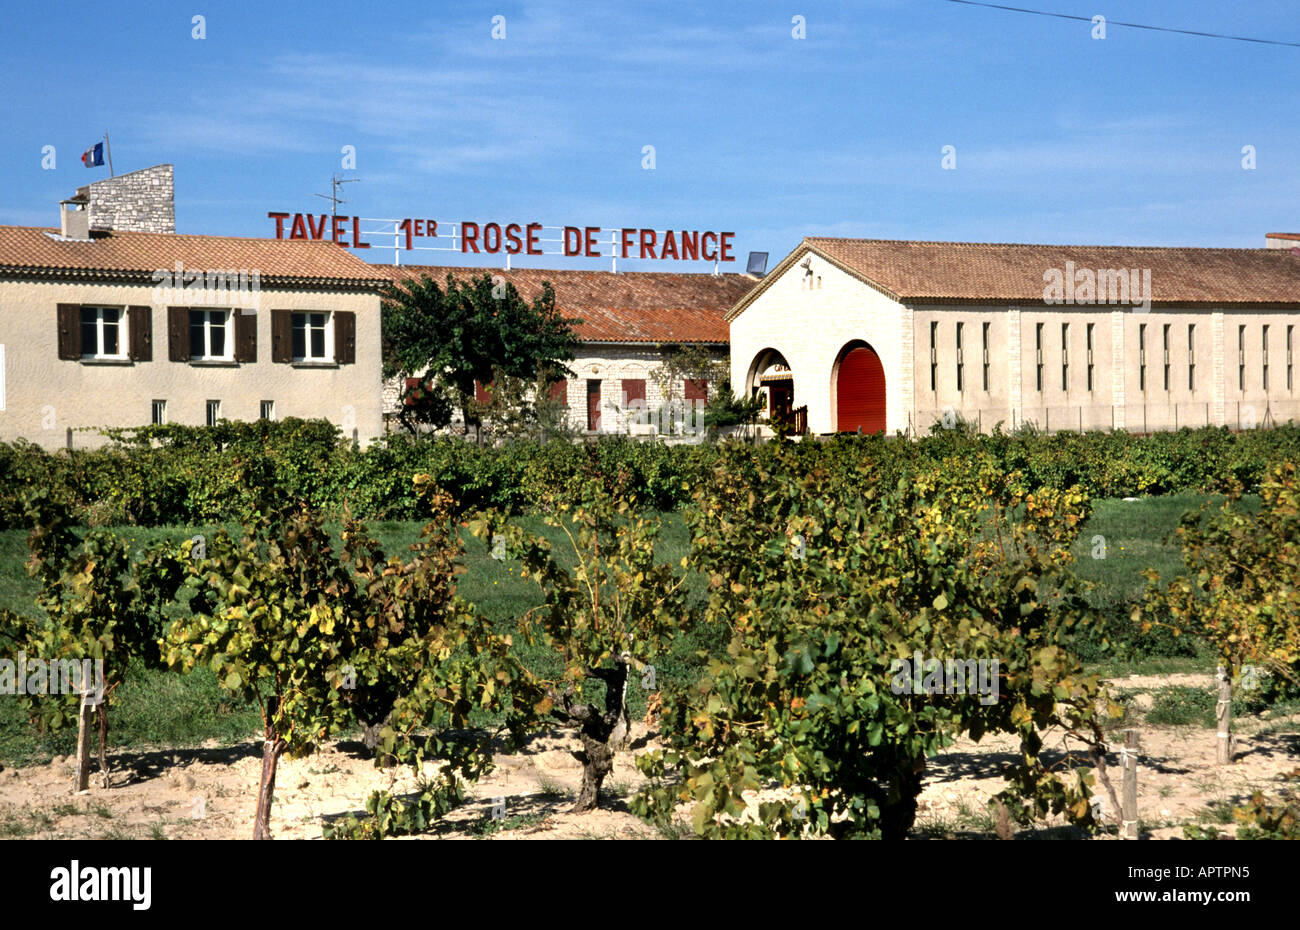 Tavel Cotes du Rhone Rose Frankreich Wein Ernte Vintage Trauben Weinberg Landwirtschaft Stockfoto